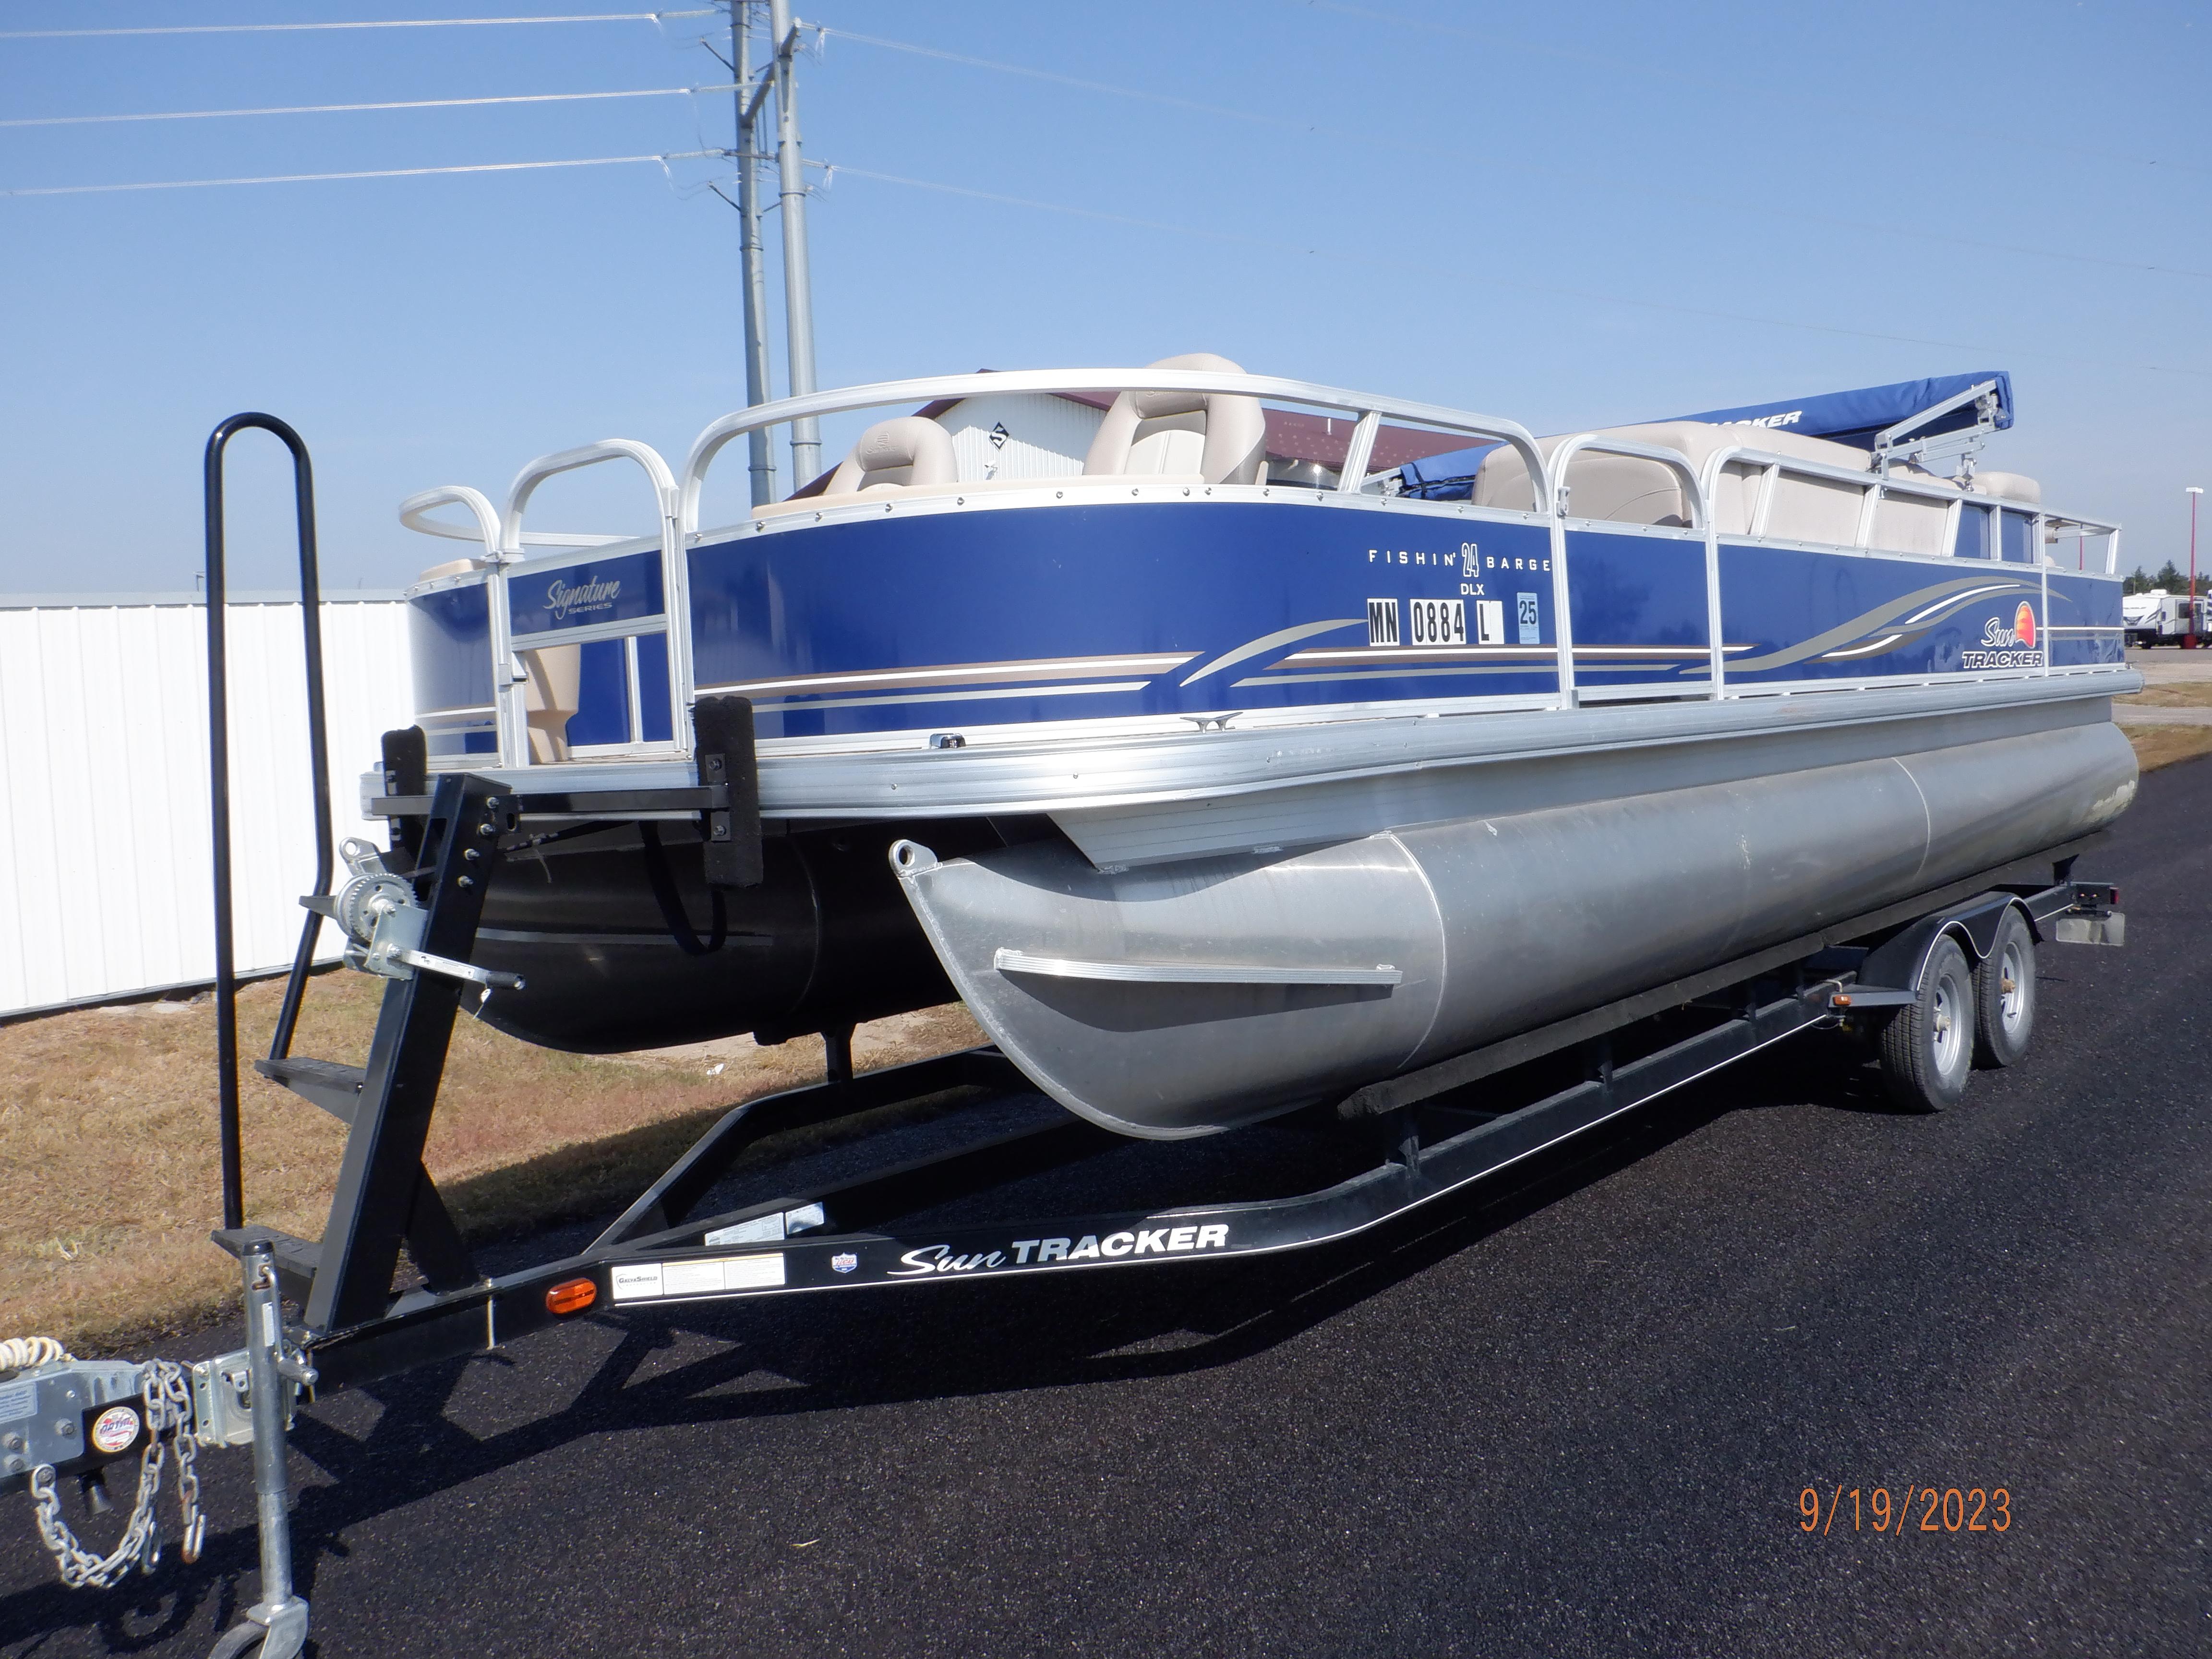 Explore Sun Tracker Fishin Barge 24 Dlx Boats For Sale - Boat Trader